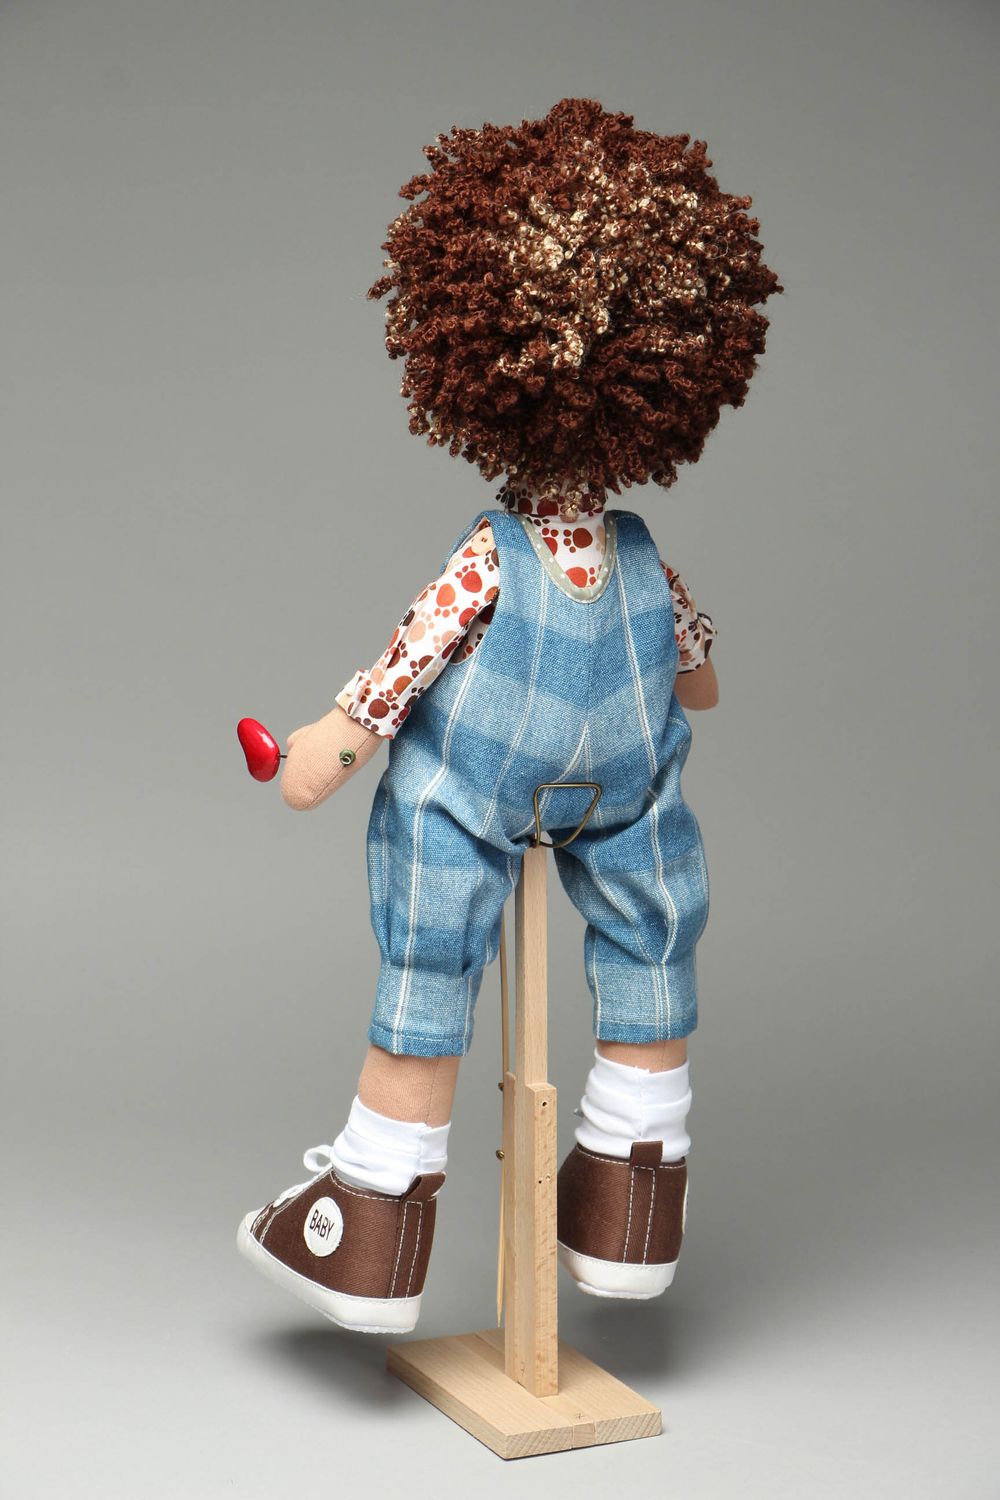 Handmade Puppe mit Ständer foto 3